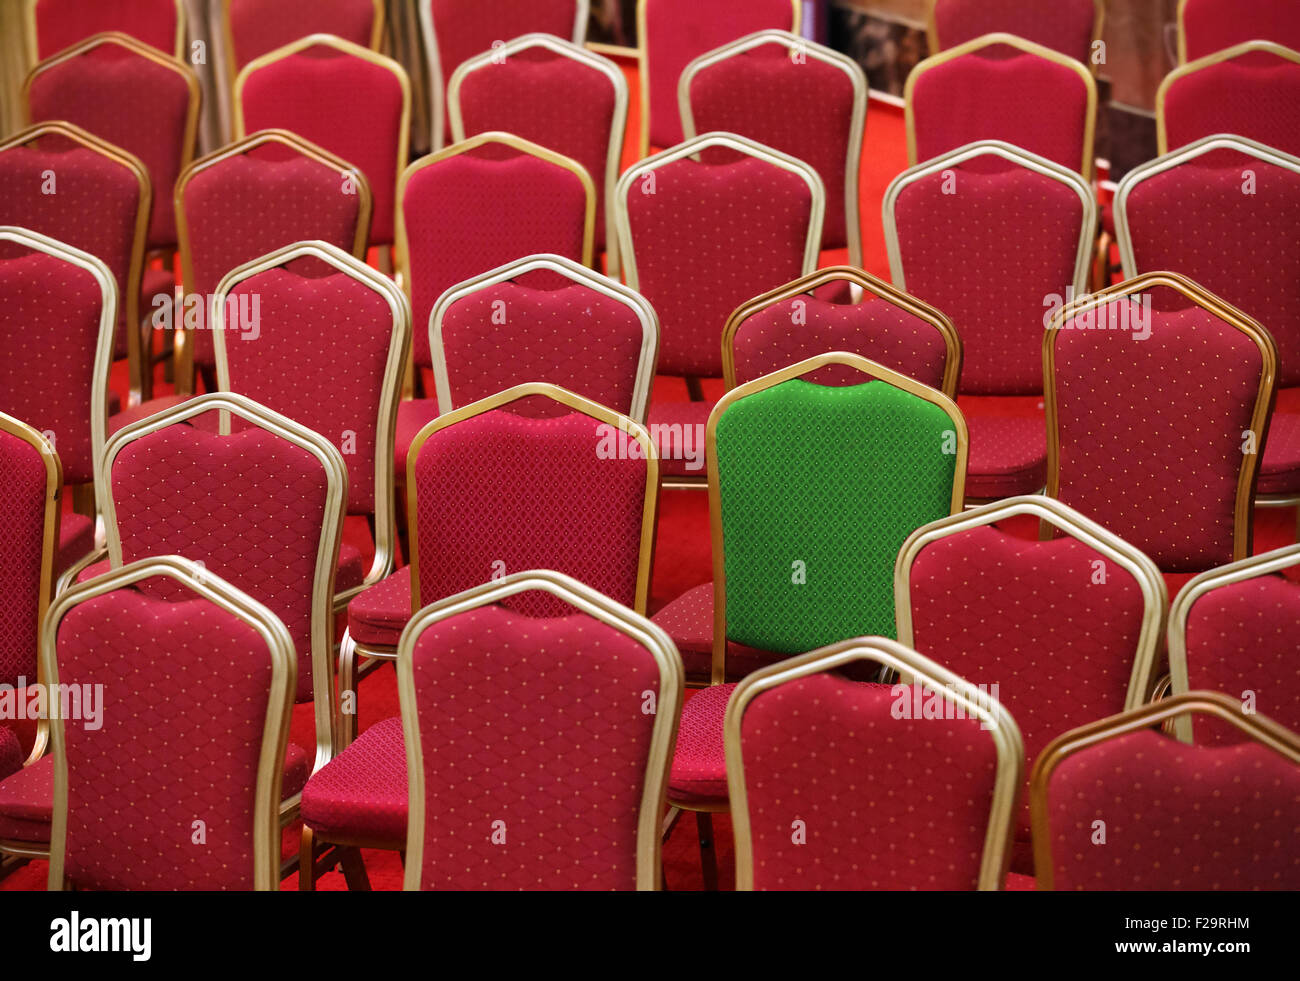 La diversité, concept différent ou unique - fauteuil vert dans un groupe de rouges Banque D'Images